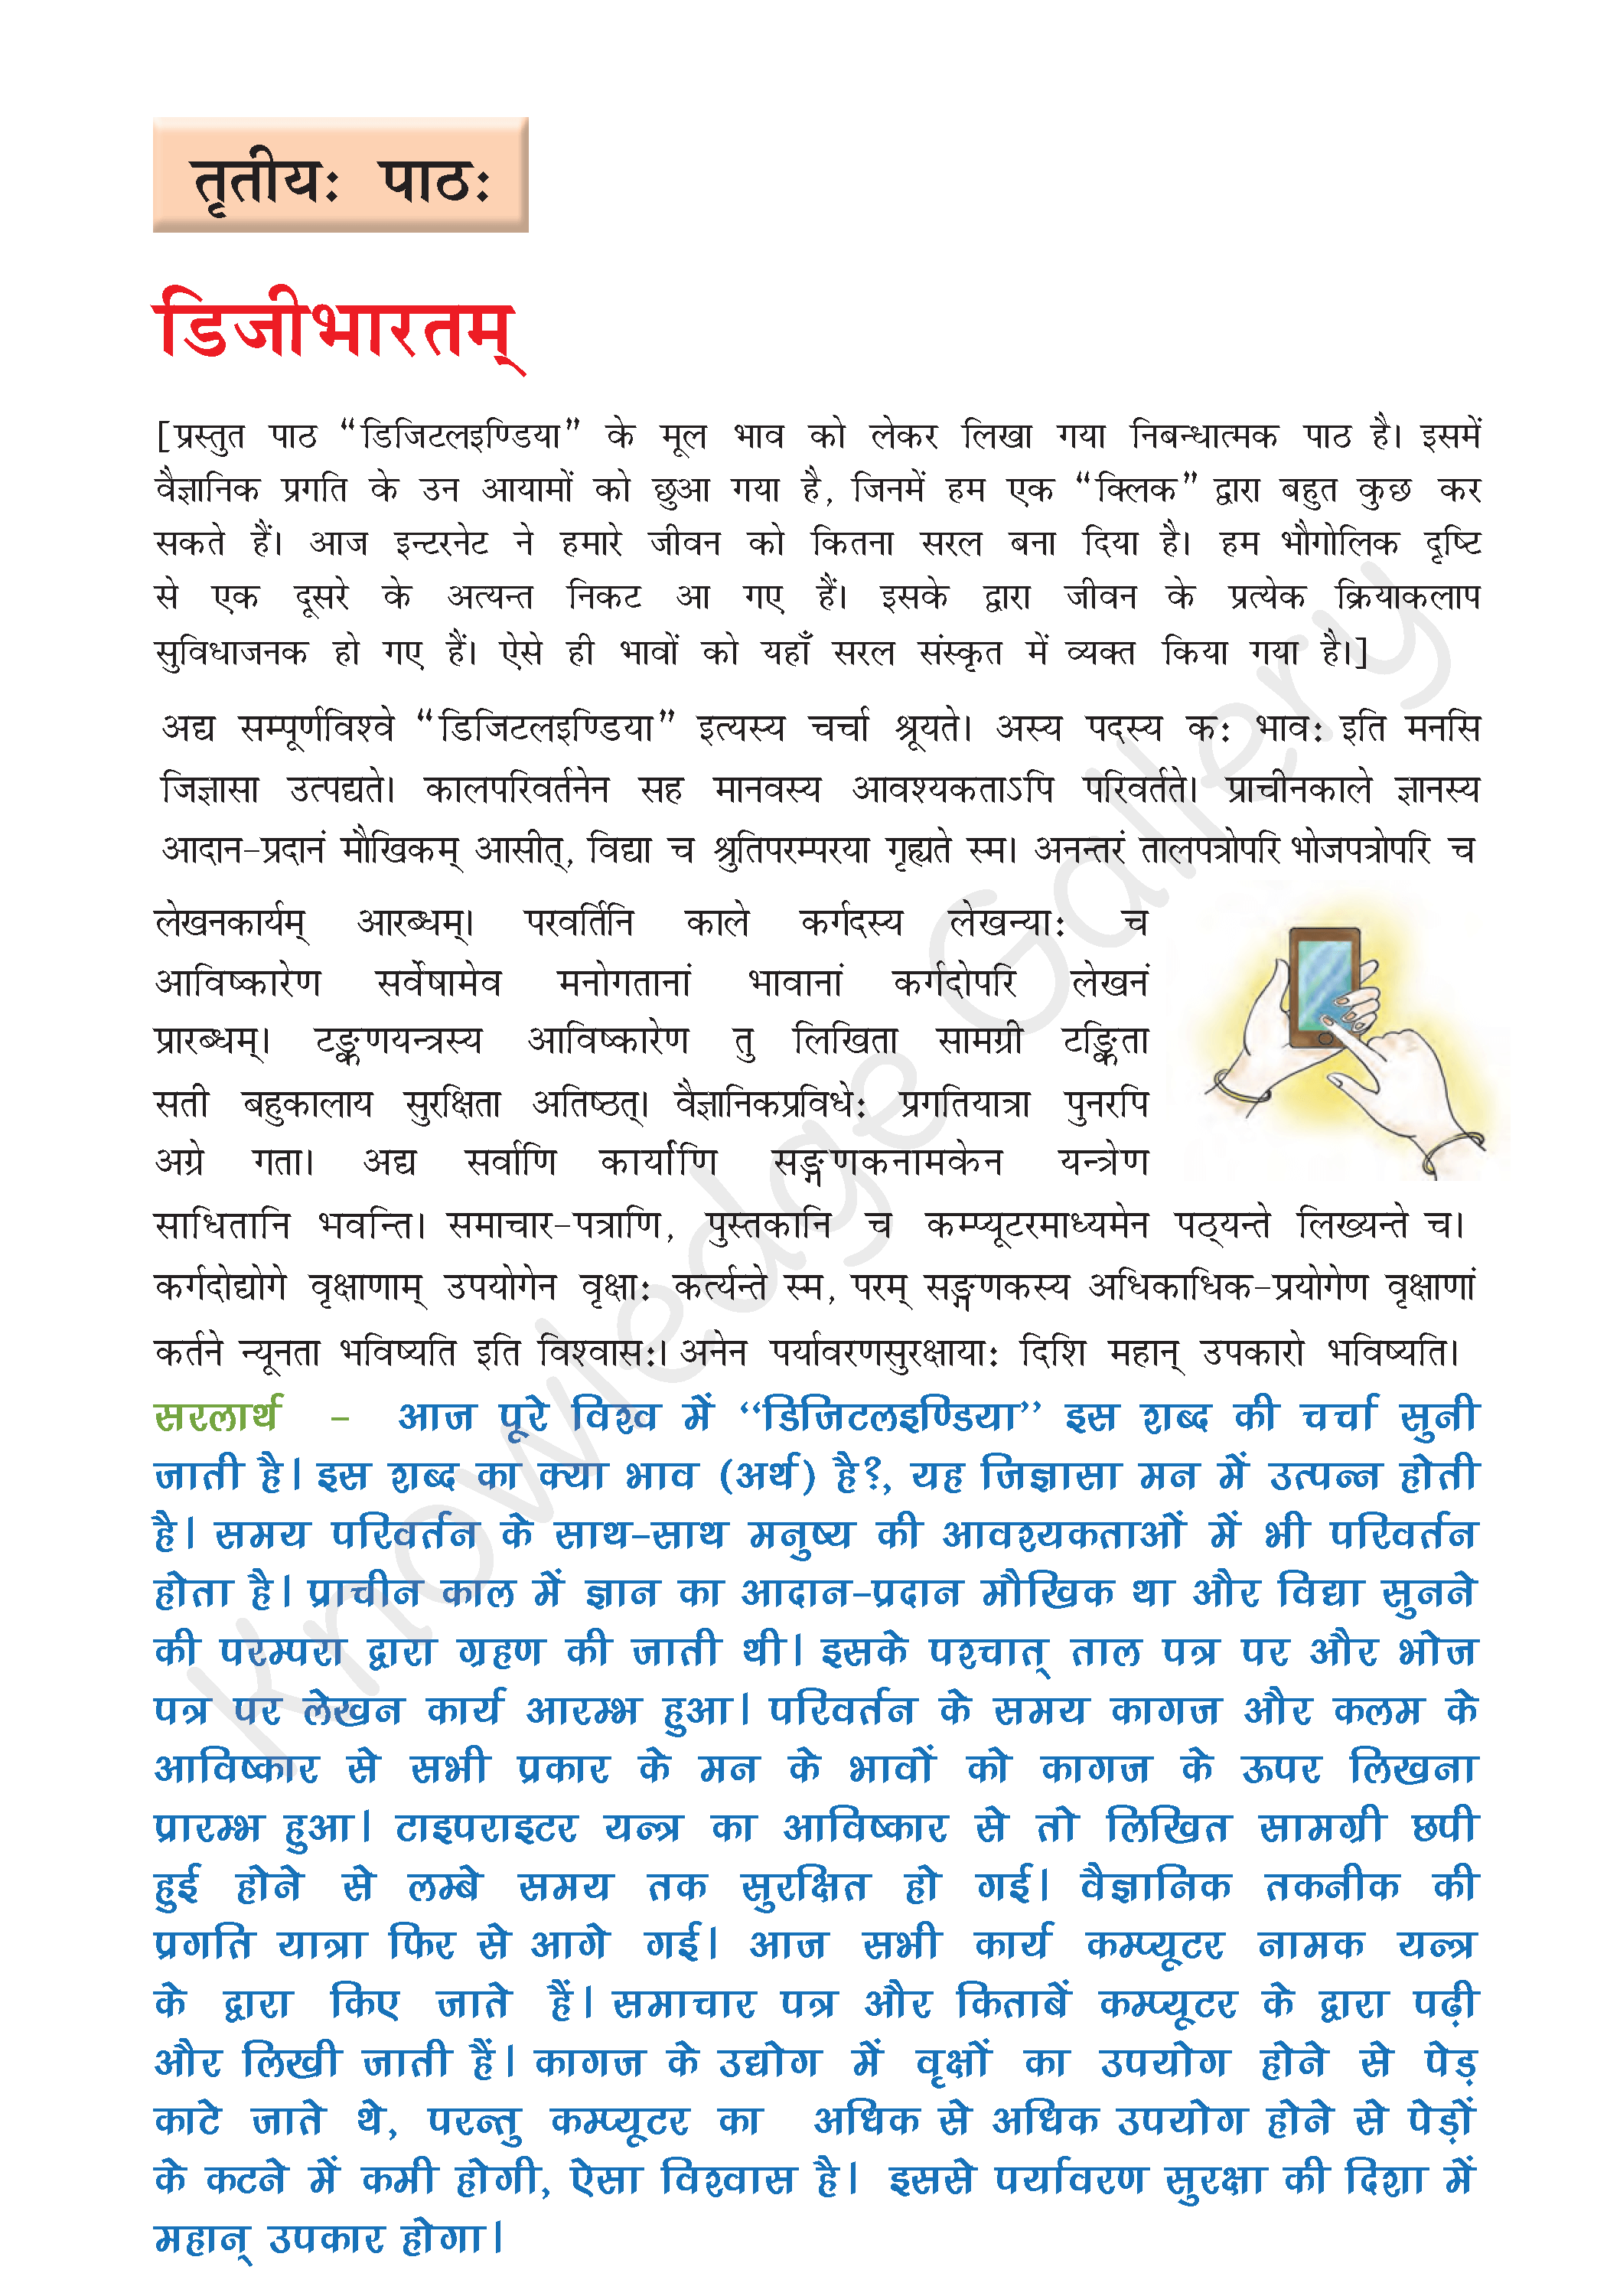 NCERT Solution For Class 8 Sanskrit Chapter 3 part 1